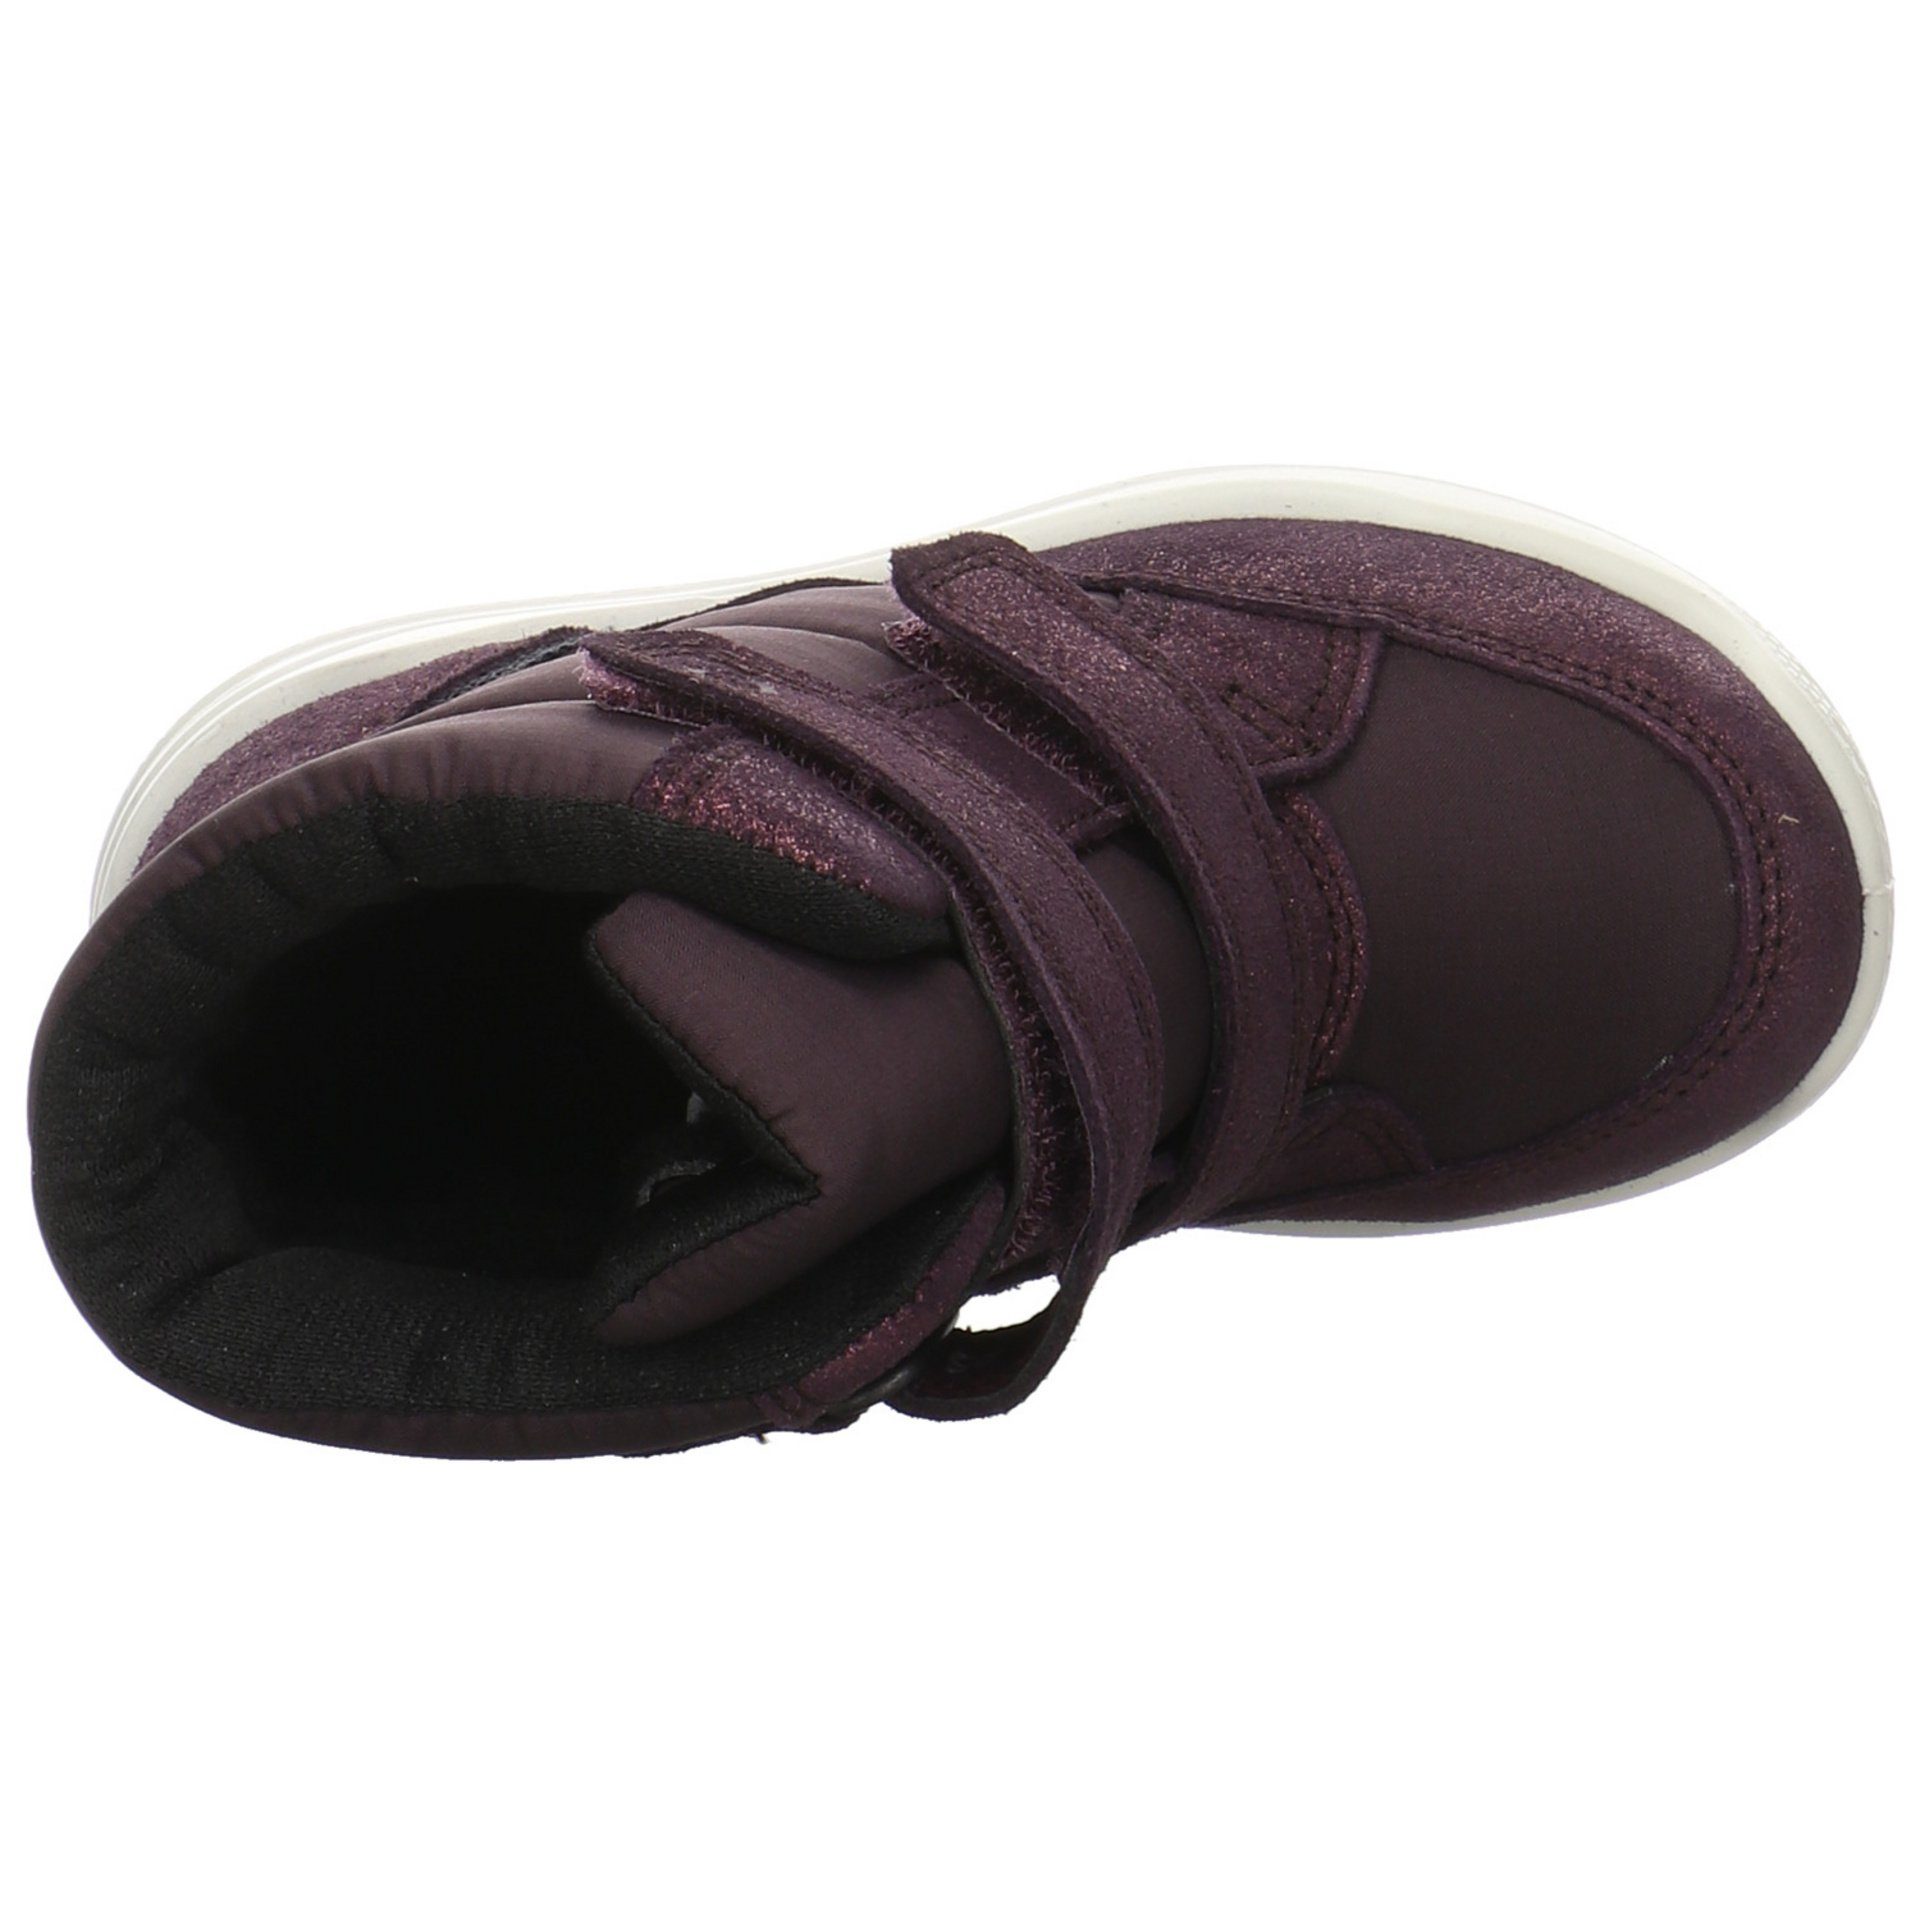 Mini Stiefel Urban SHADE Leder-/Textilkombination BAROLO/F NIGHT Jungen Ecco Schuhe Klettboots Stiefel